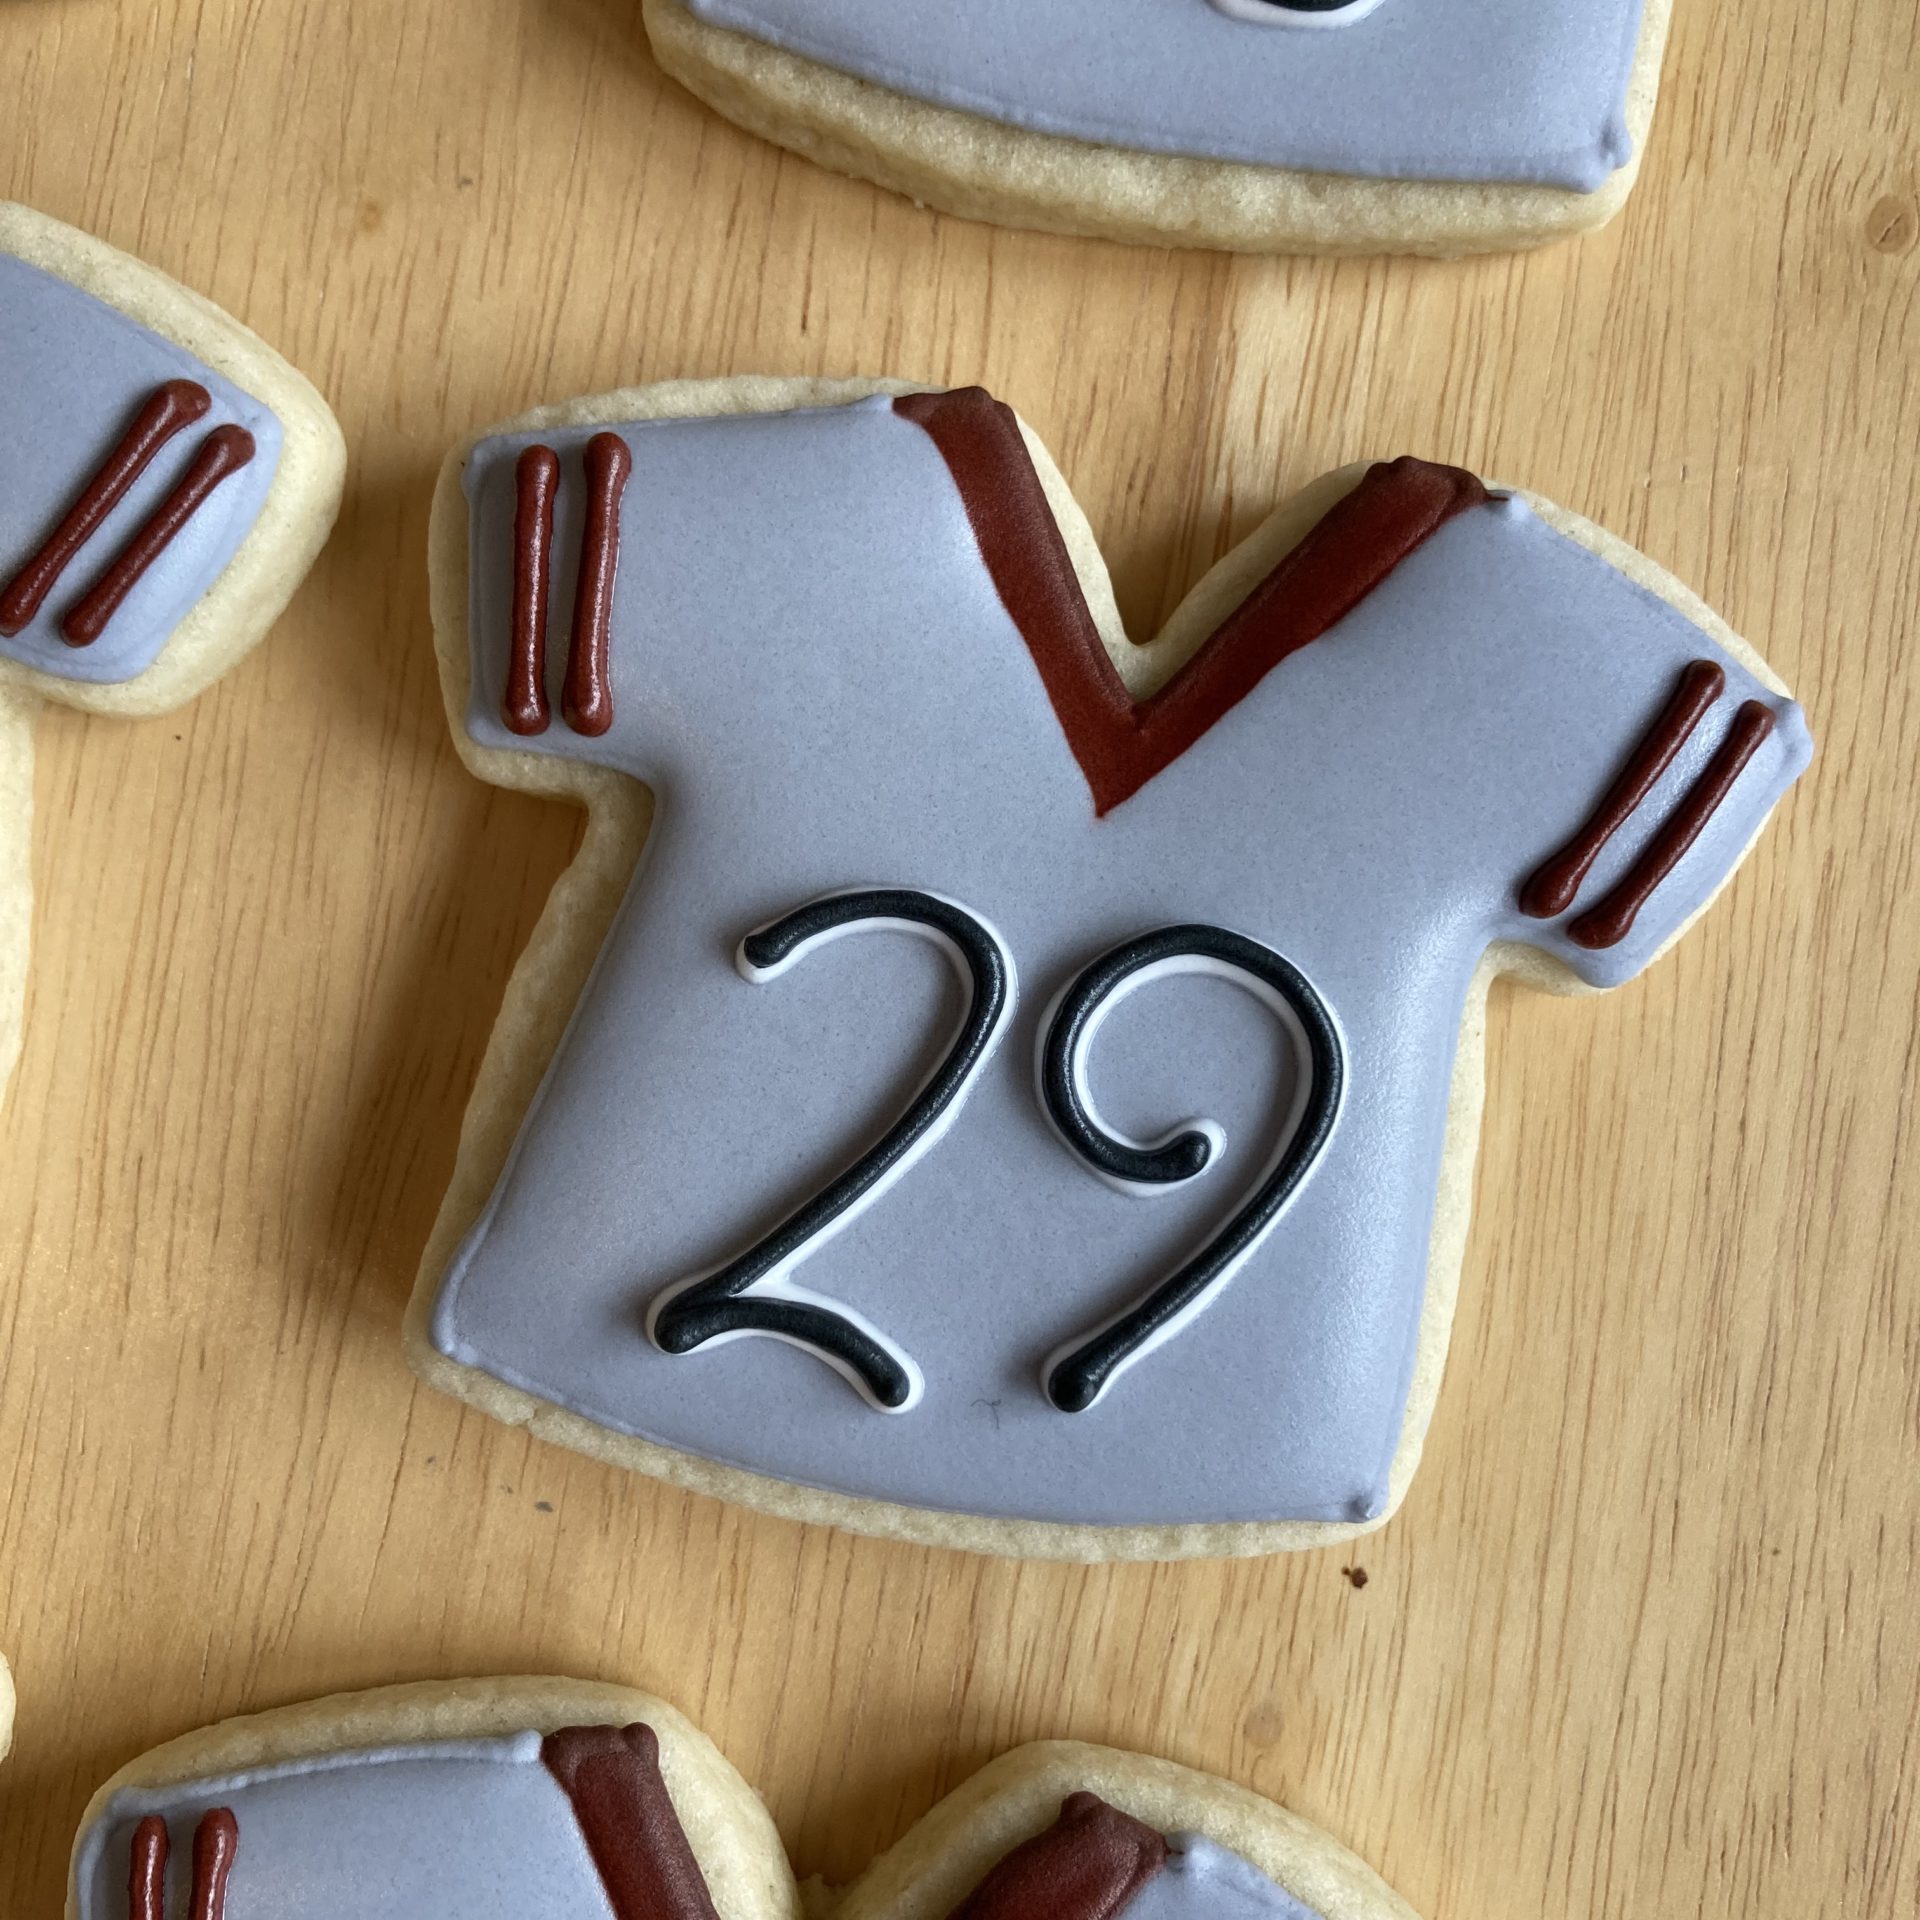 Manhiem Barons football jersey royal icing cookies